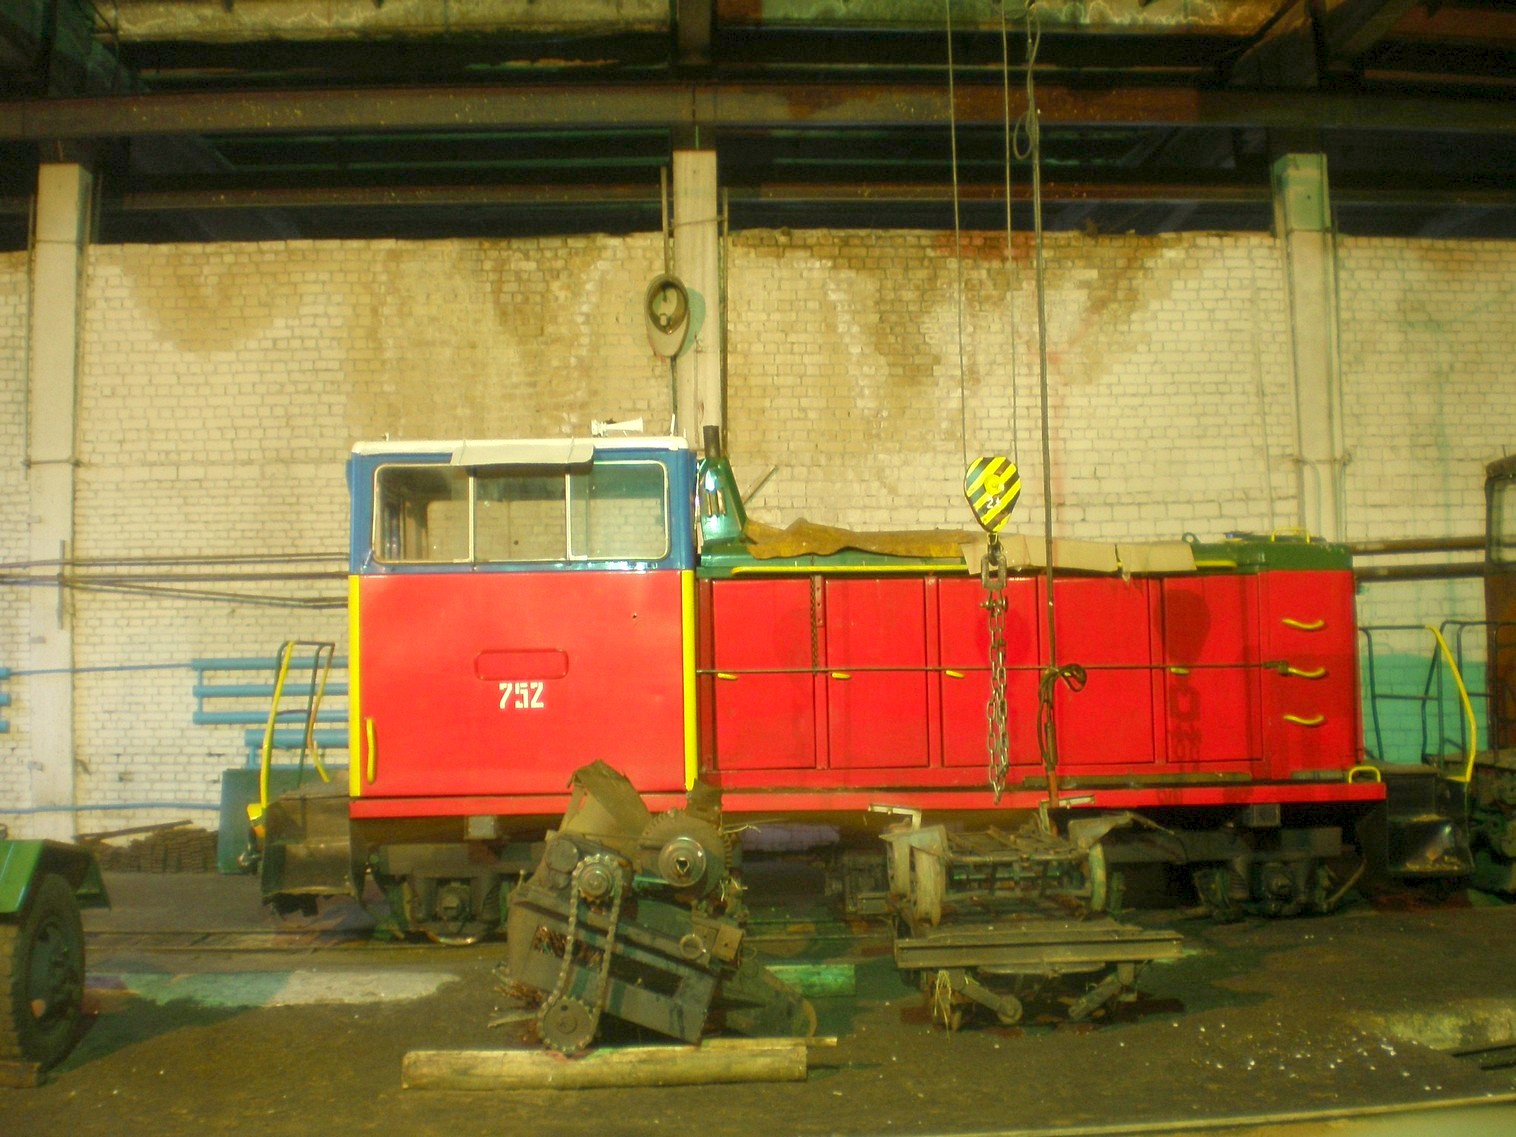 Узкоколейная  железная дорога  Слуцкого торфопредприятия   —  фотографии, сделанные в 2008 году (часть 1)